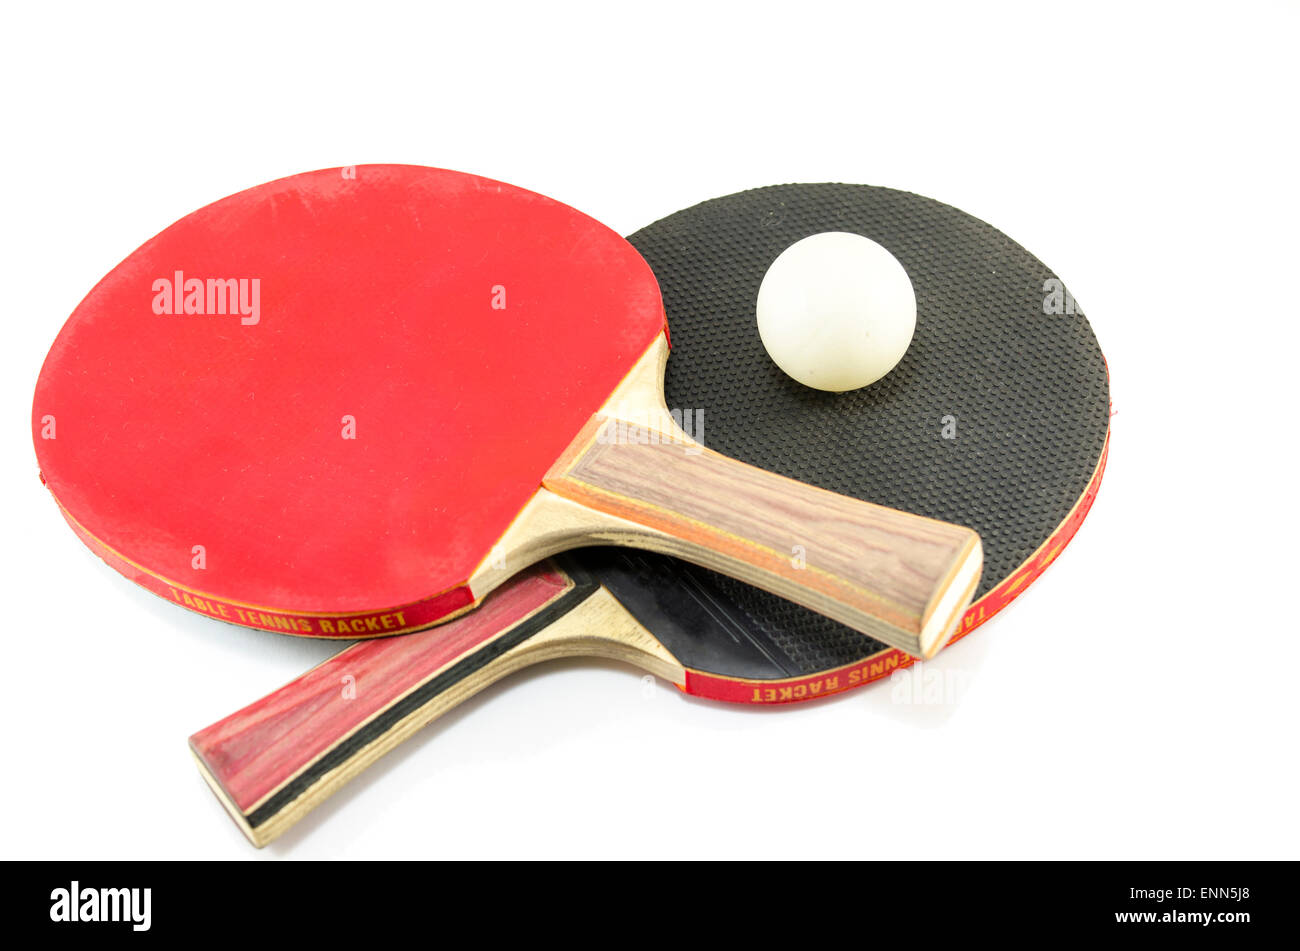 Deux raquettes de ping-pong et d'une balle isolated on white Banque D'Images